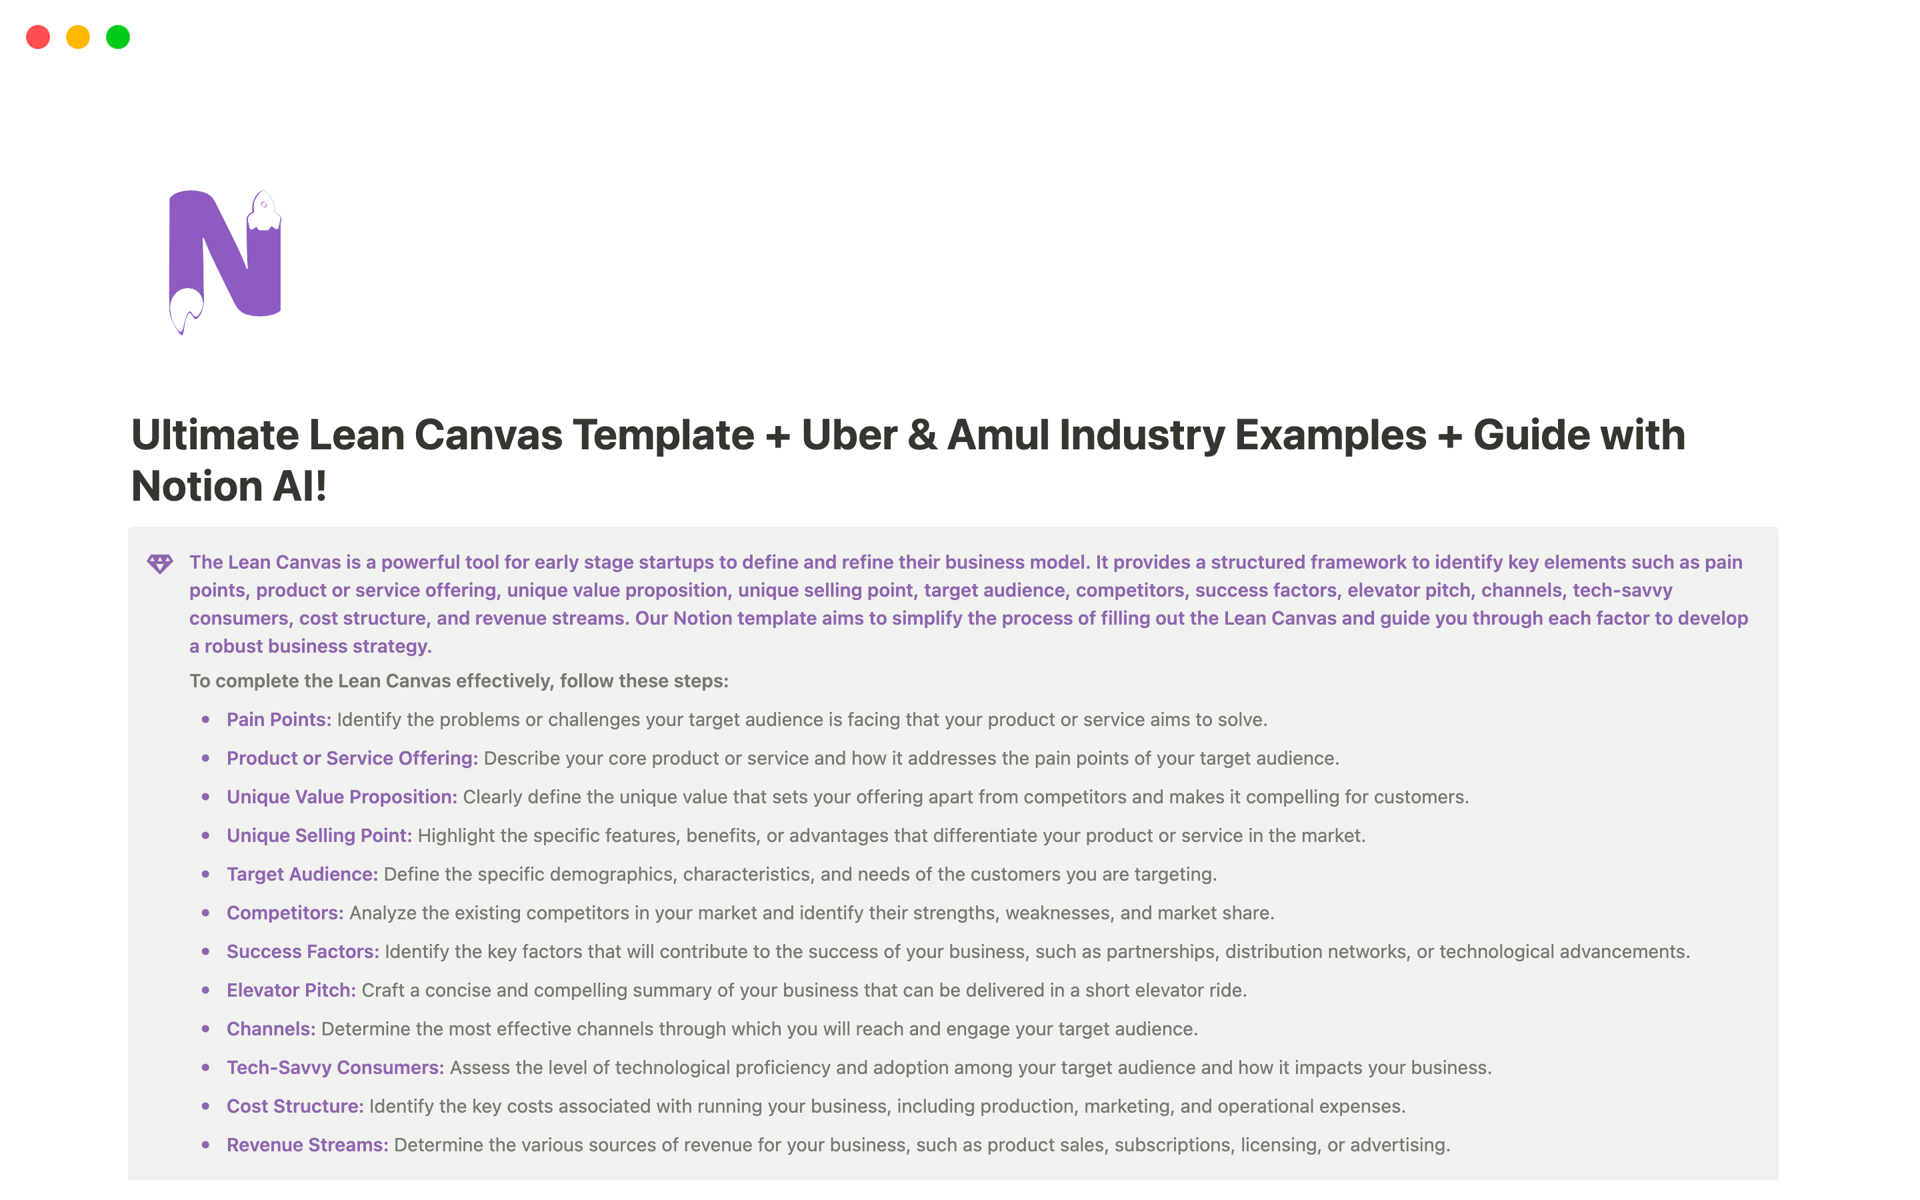 Aperçu du modèle de Ultimate Lean Canvas with examples of Uber & Amul